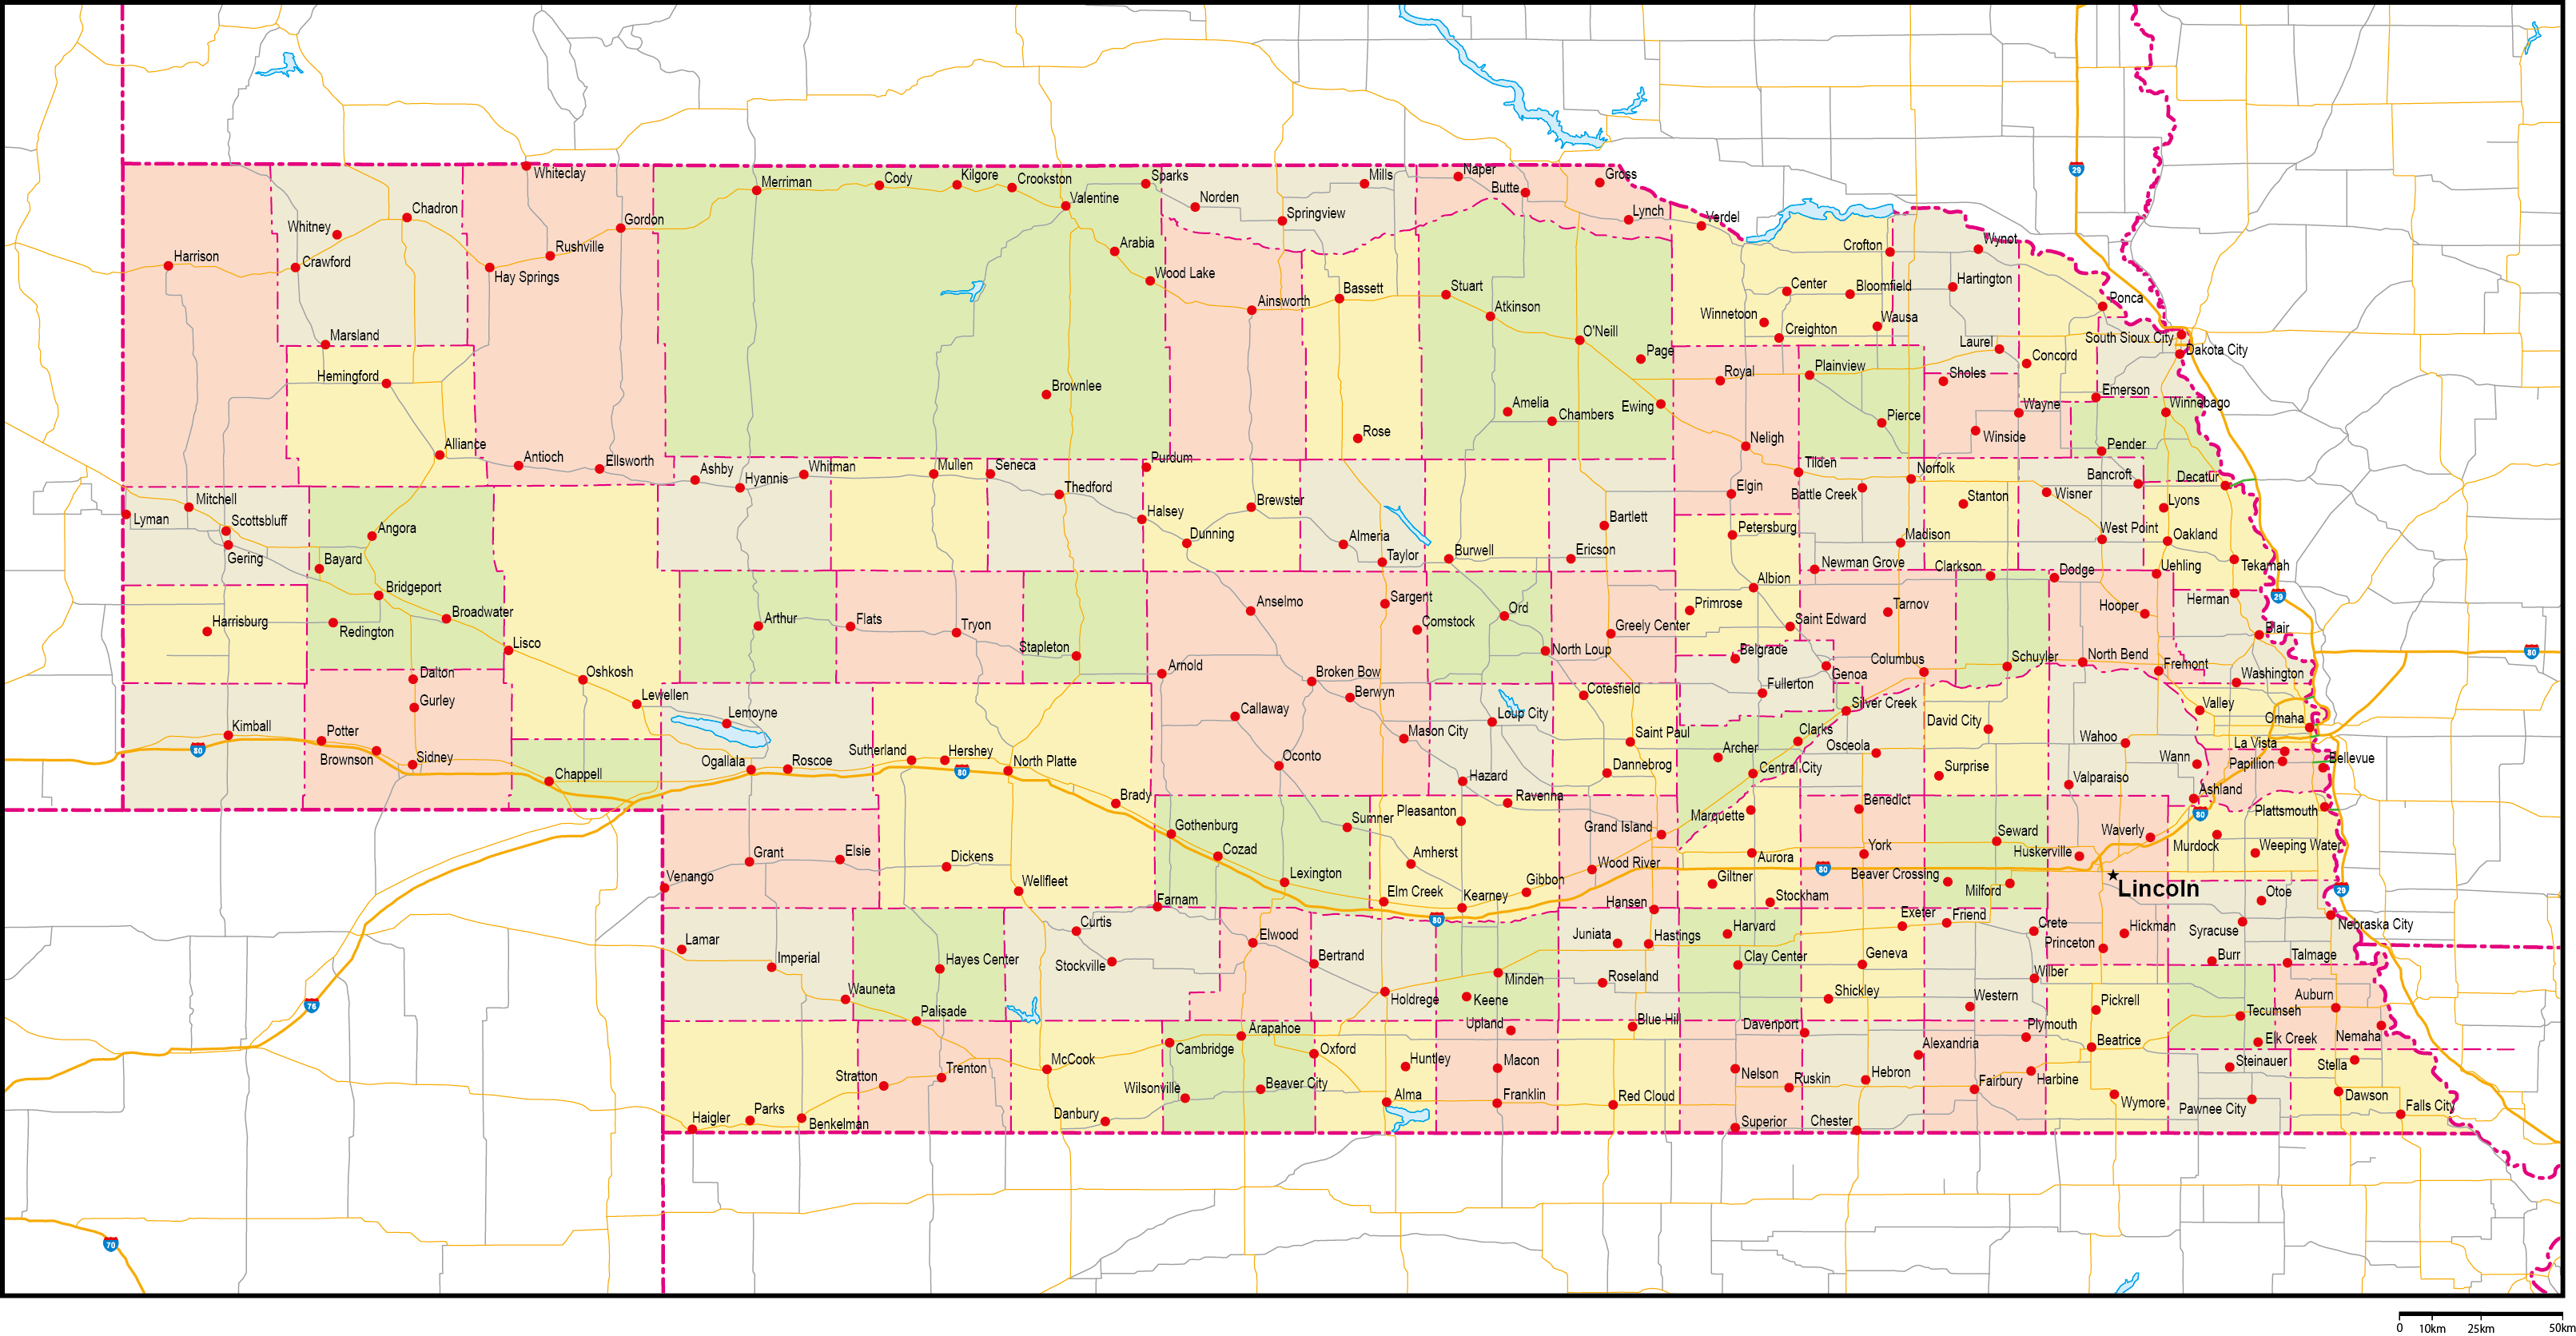 ネブラスカ州郡色分け地図州都・主な都市・道路あり(英語)フリーデータの画像